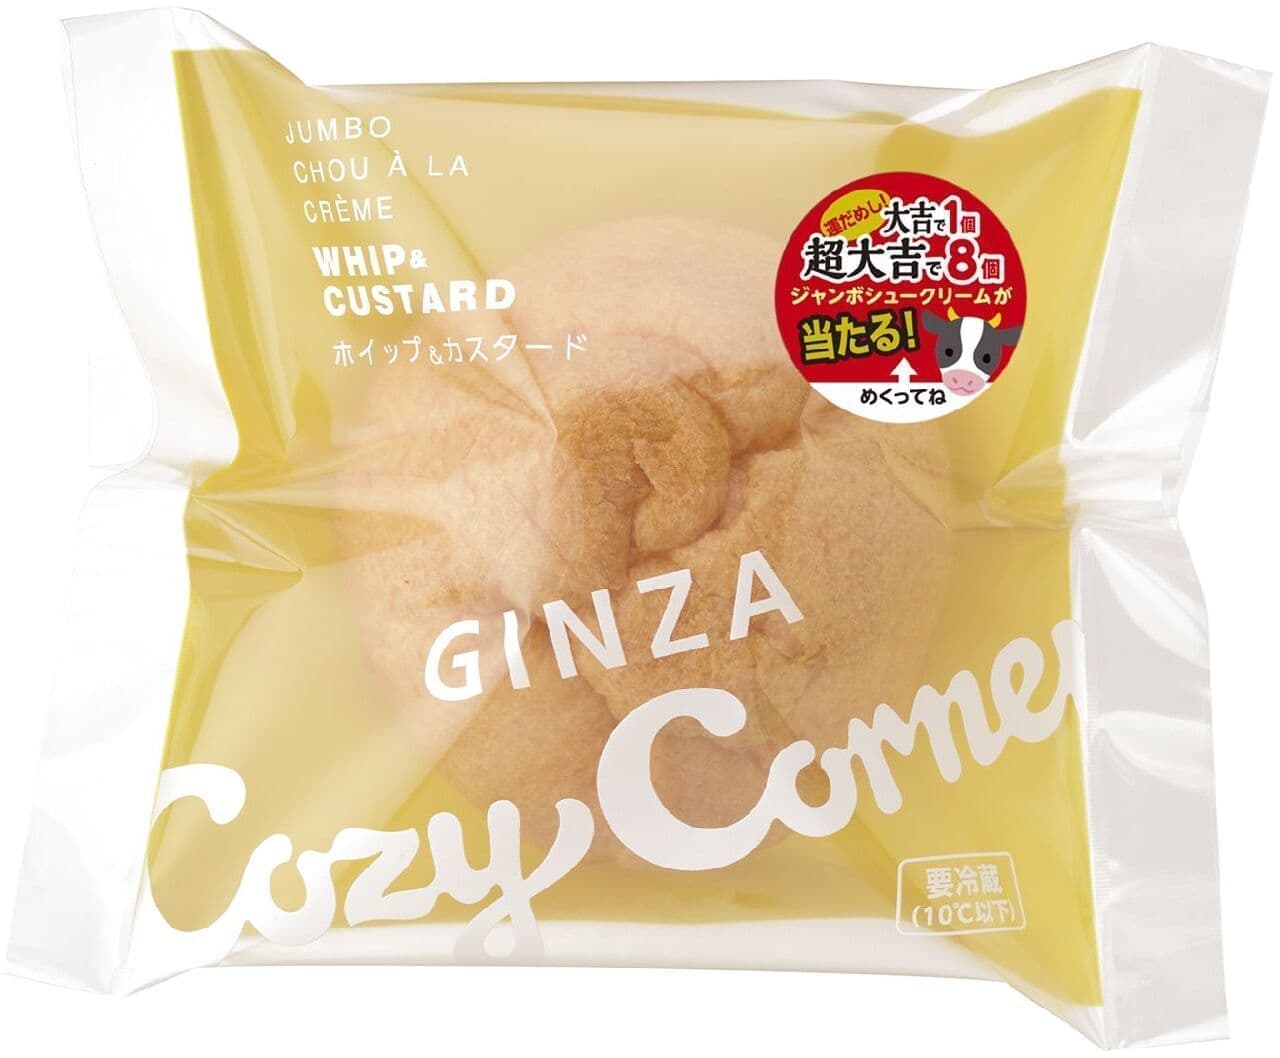 Ginza Cozy Corner "Jumbo Cream Puff (Whipped & Custard)"